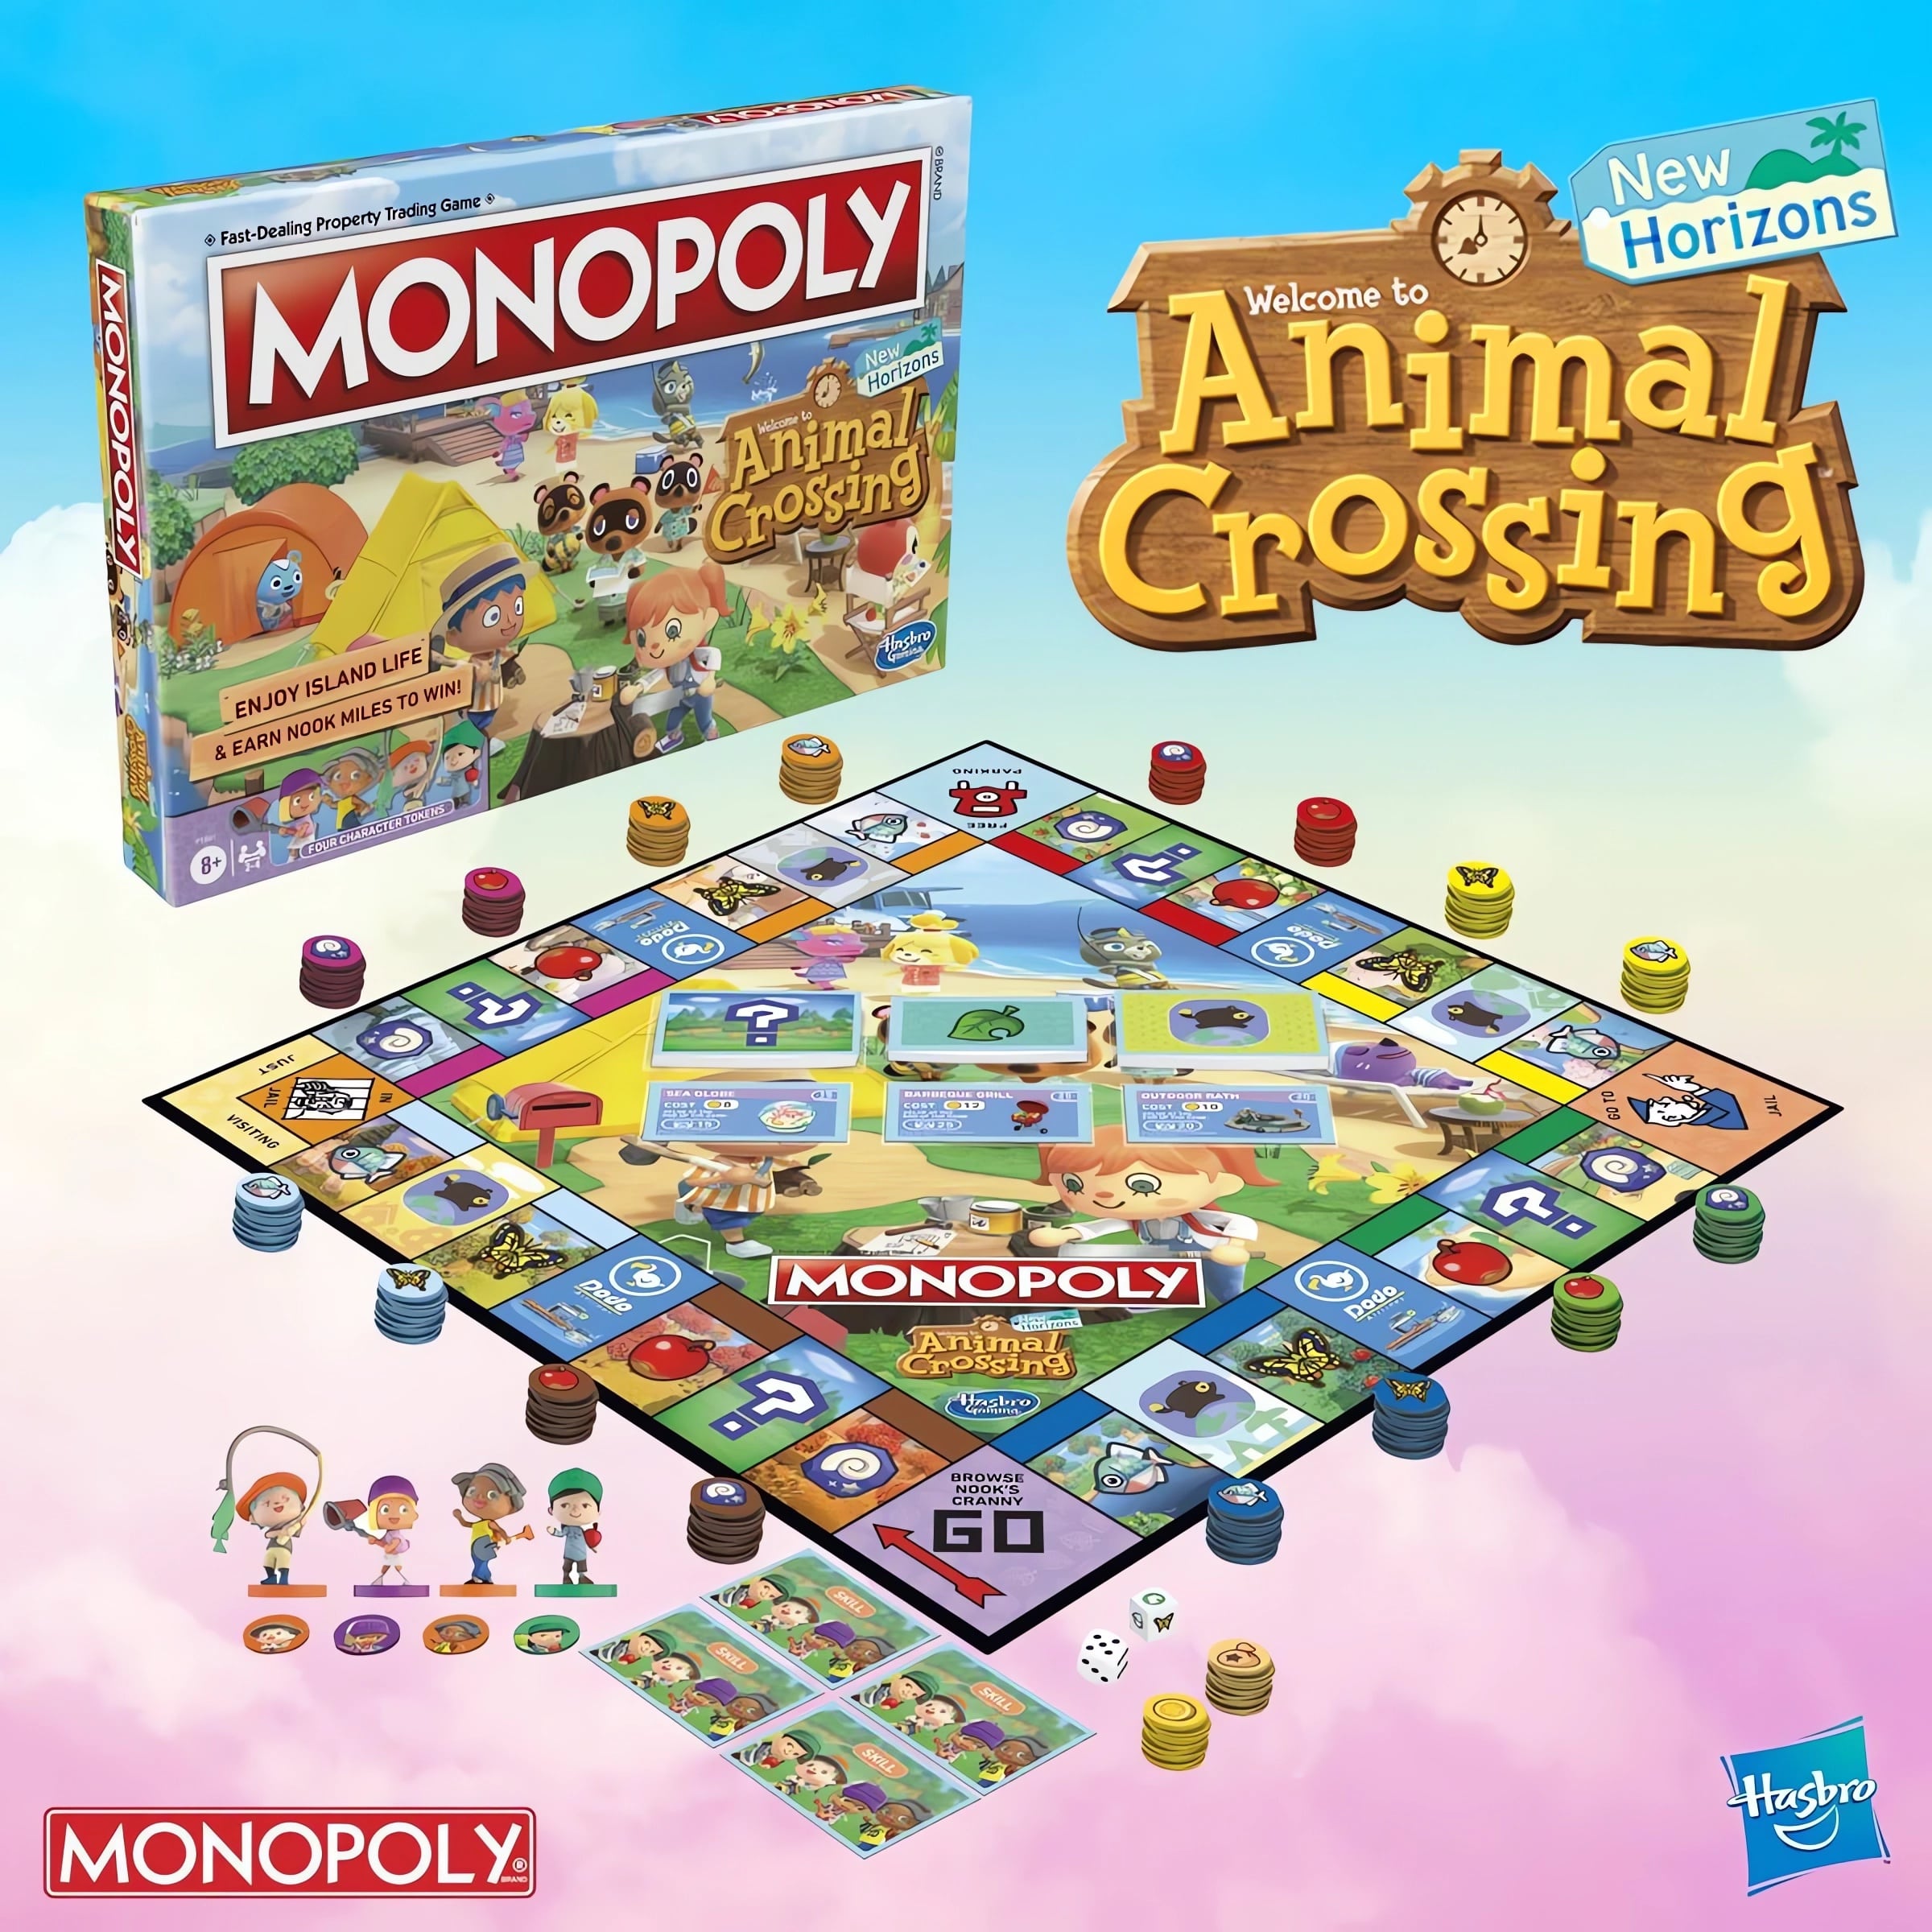 MONOPOLY ROBLOX - Monopoly